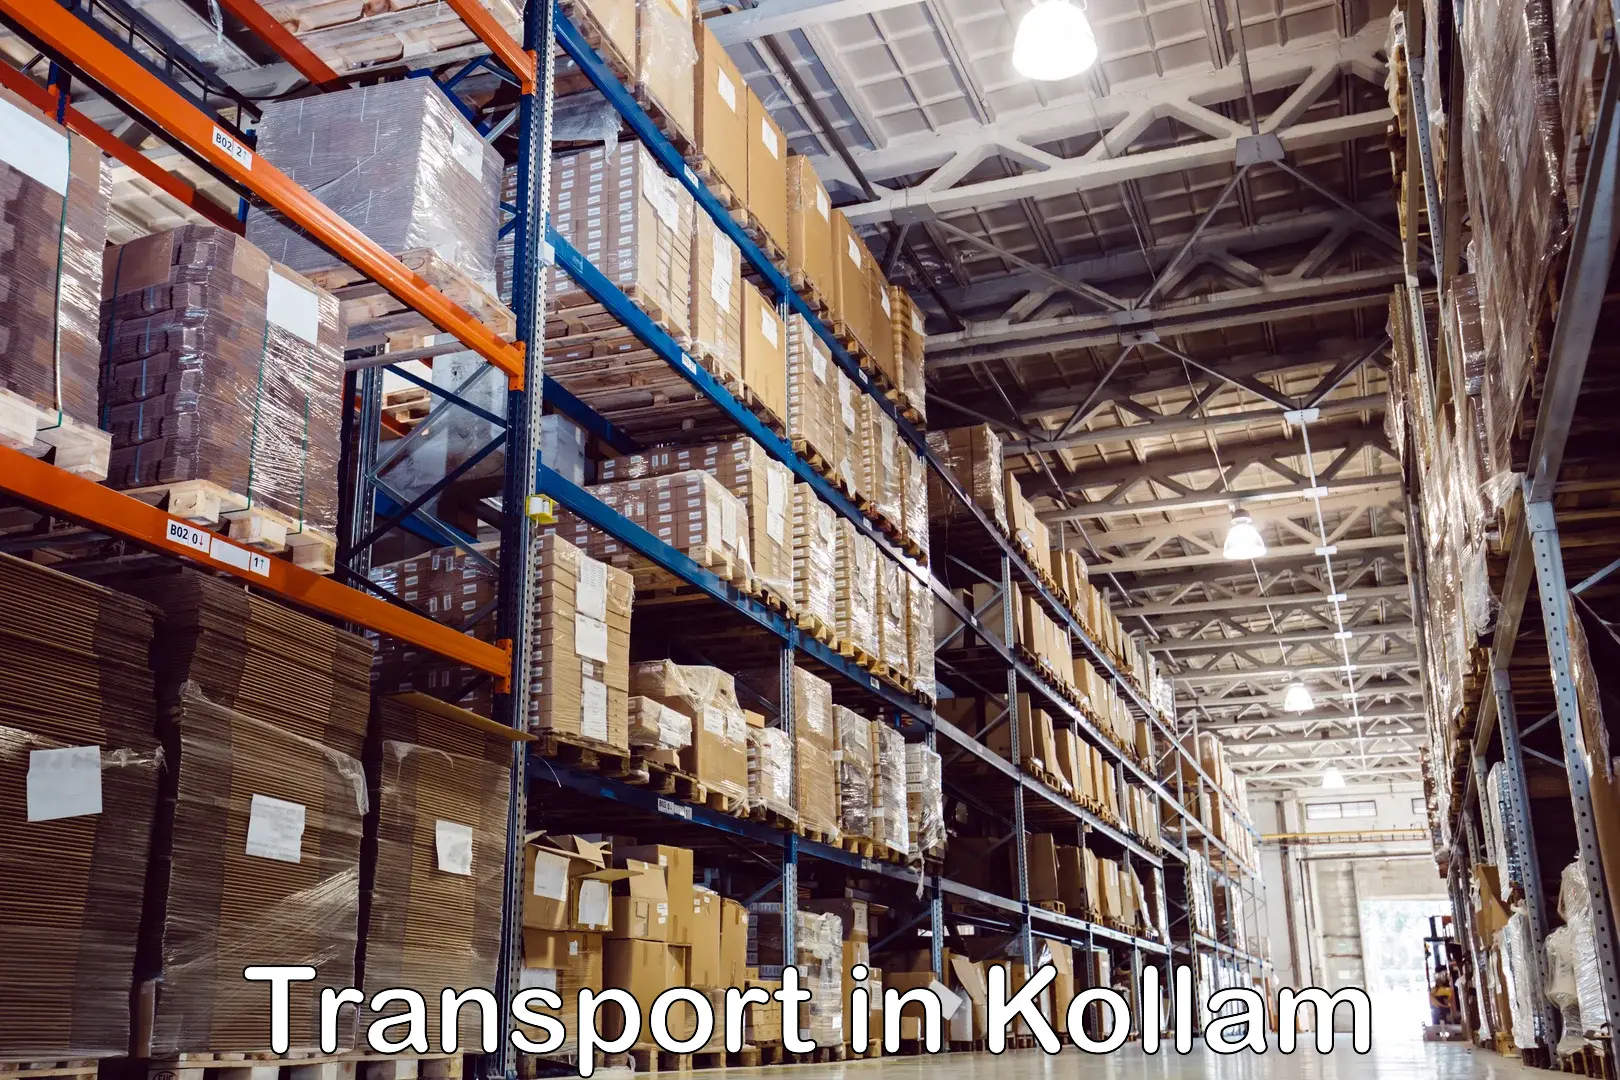 Transport in sharing in Kollam